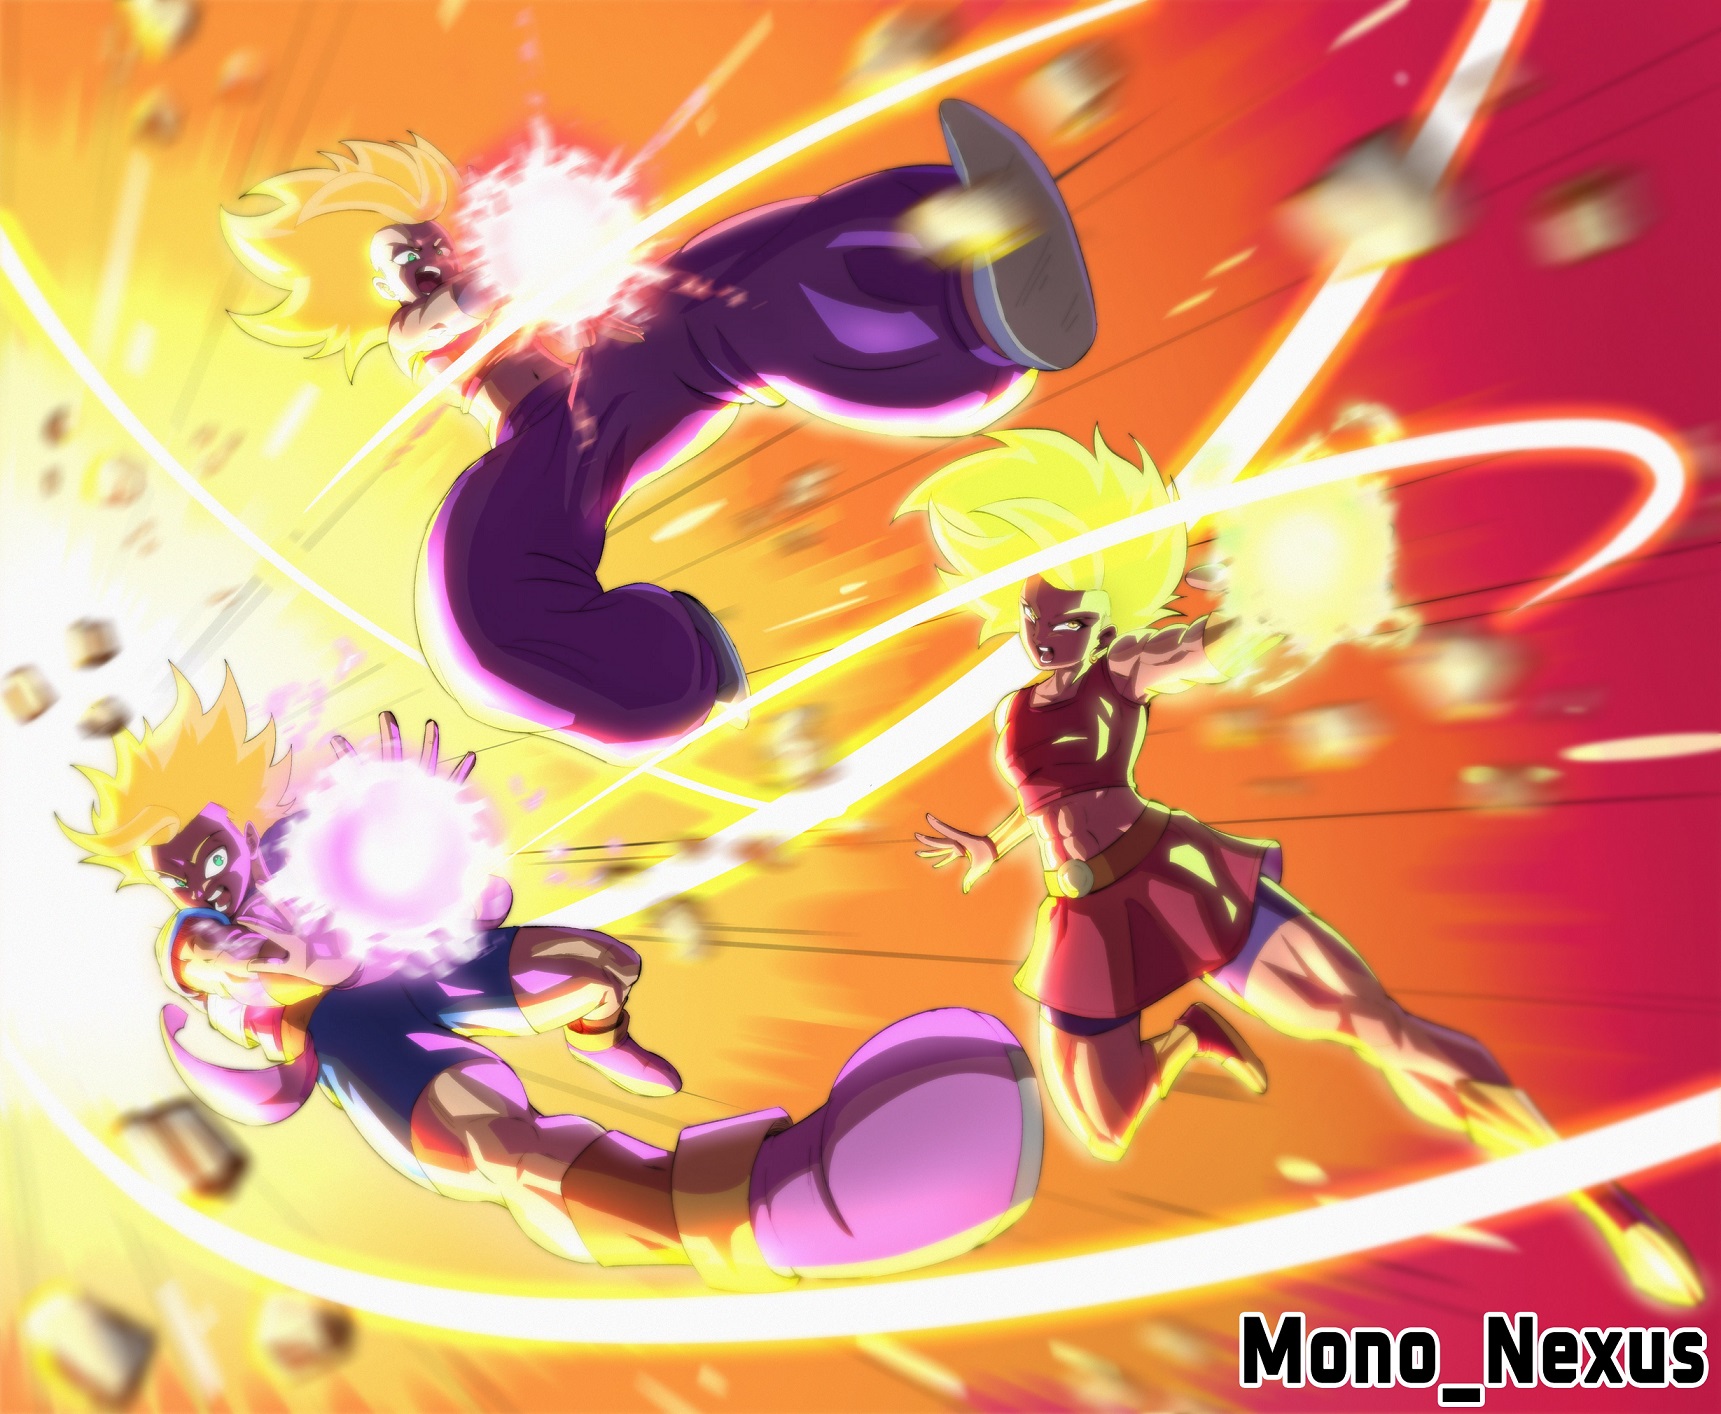 Fã de Dragon Ball fez uma arte incrível do trio Saiyajin do Universo 6